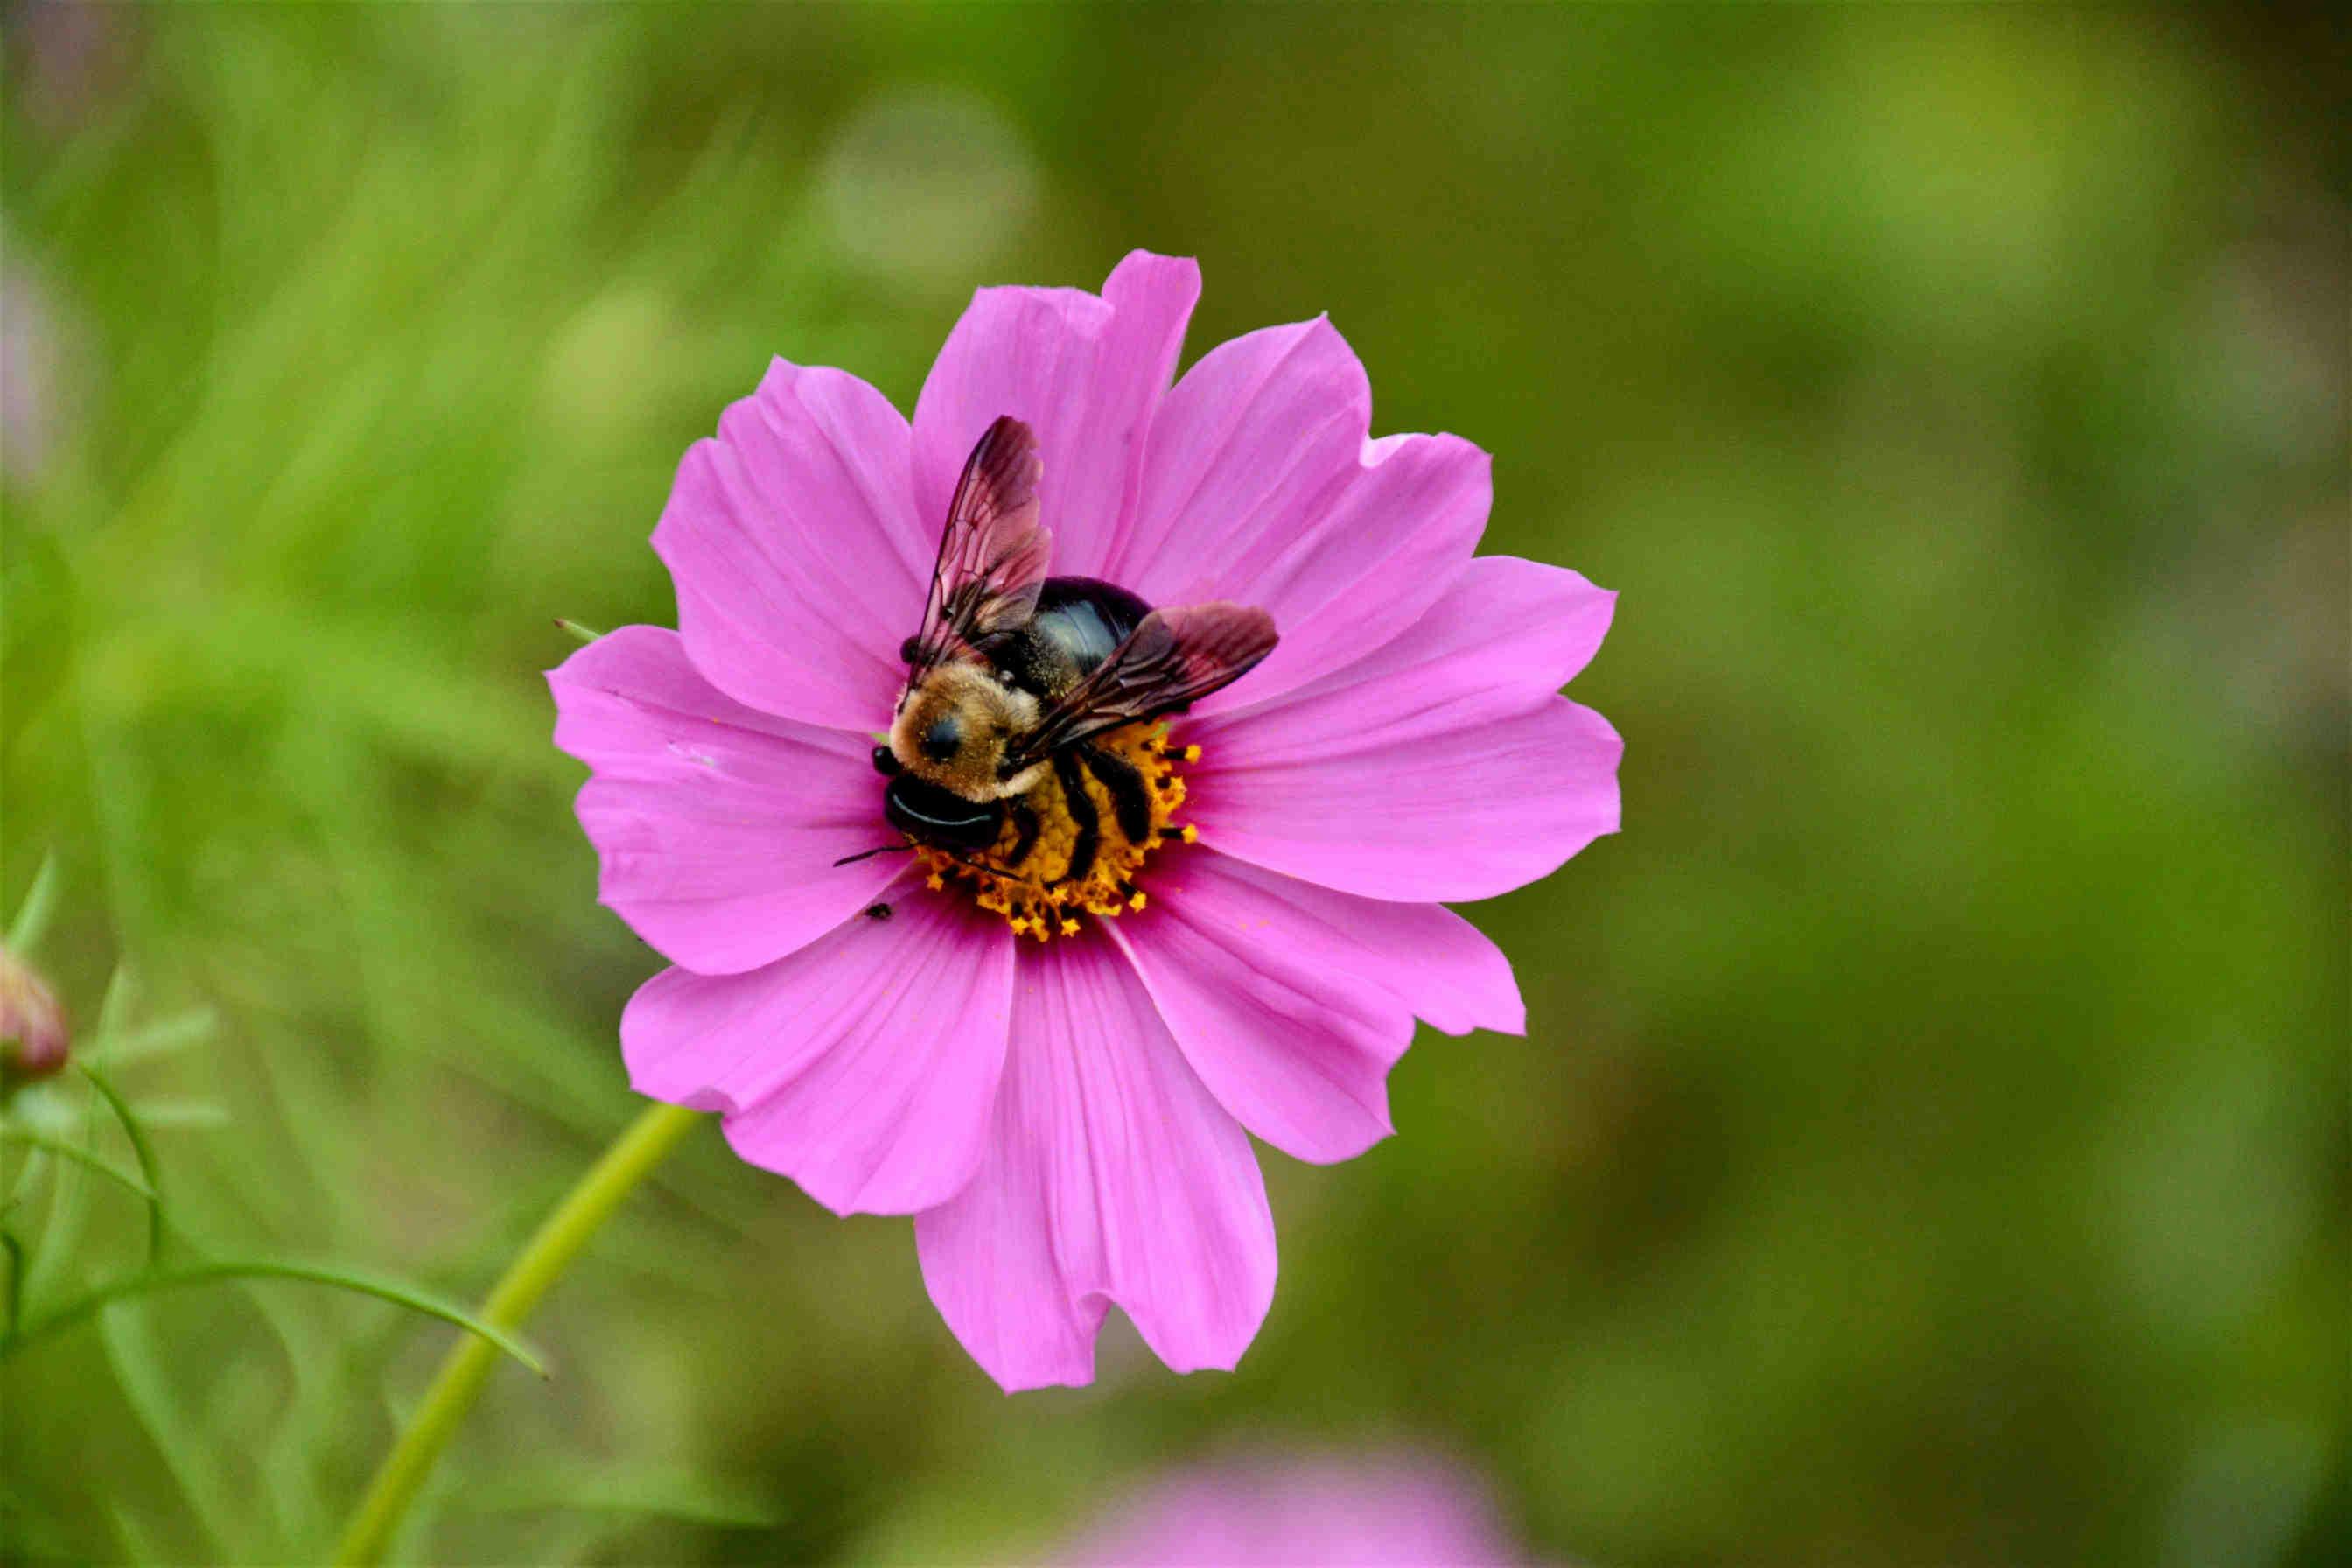 I fiori si sono adattati al sistema visivo delle api